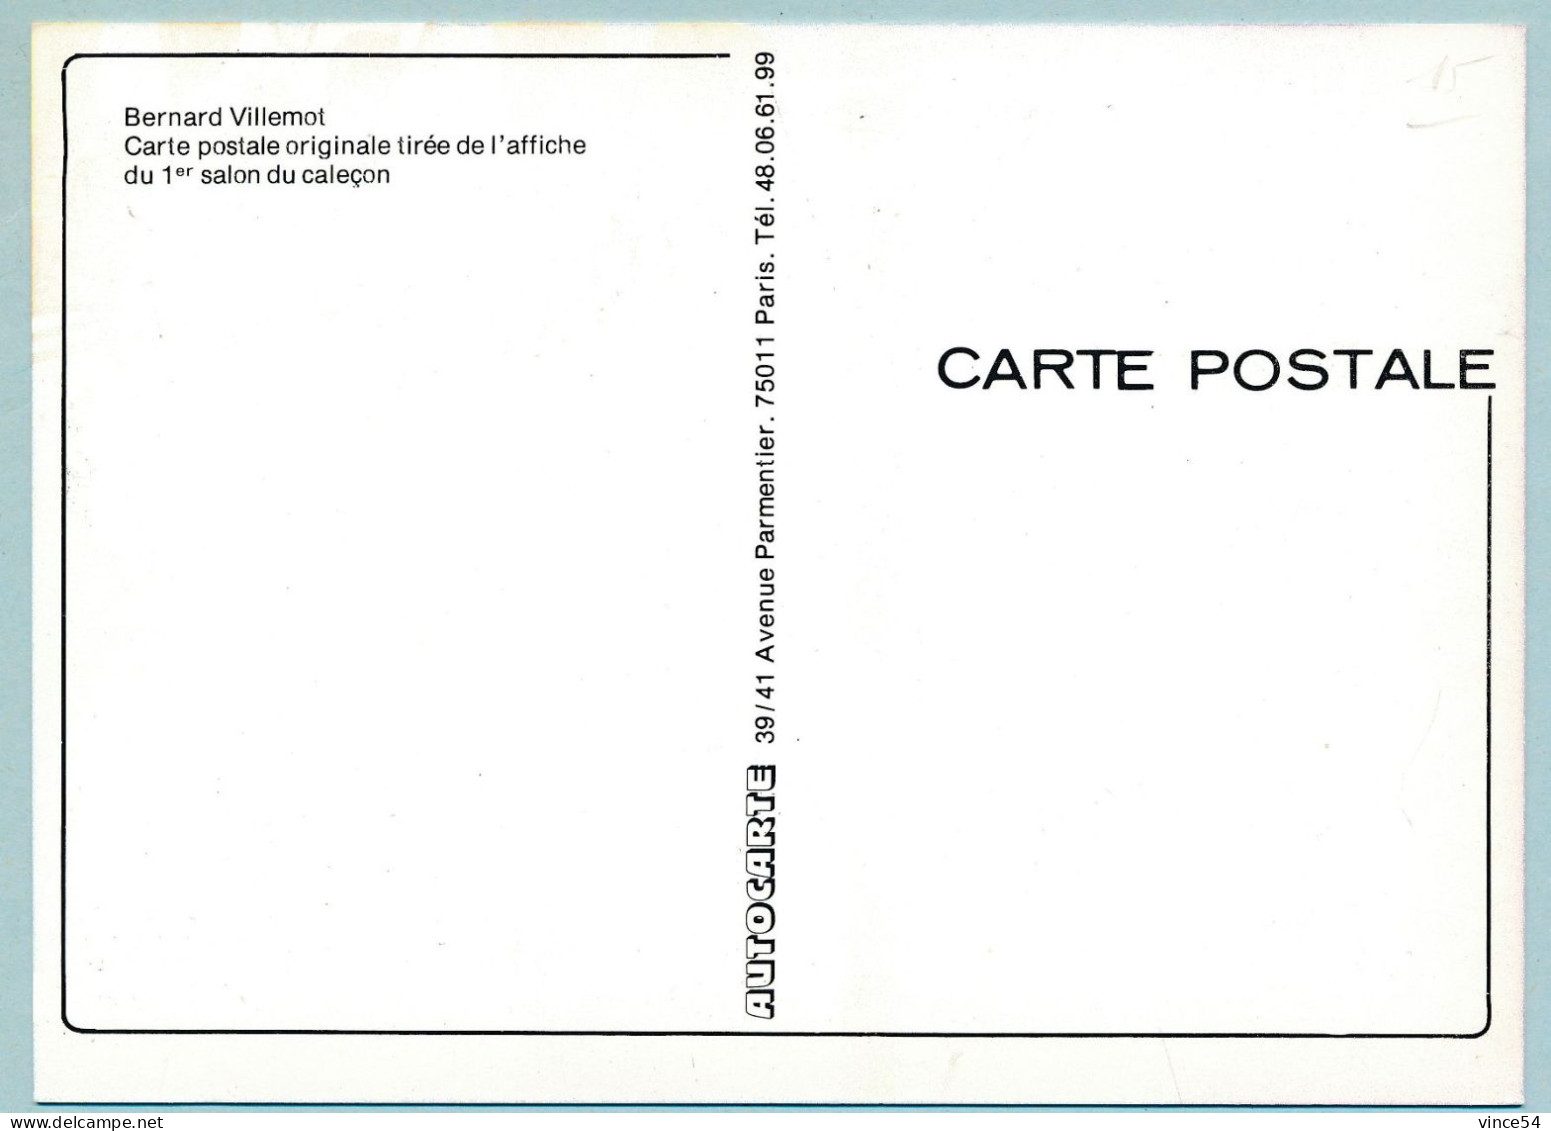 CASINO De CABOURG 2 Et 3 Août 1986 - Journées Du Caleçon Bernard Villemot Carte Pôstale Tirée De L'affiche Du 1er Salon - Cabourg